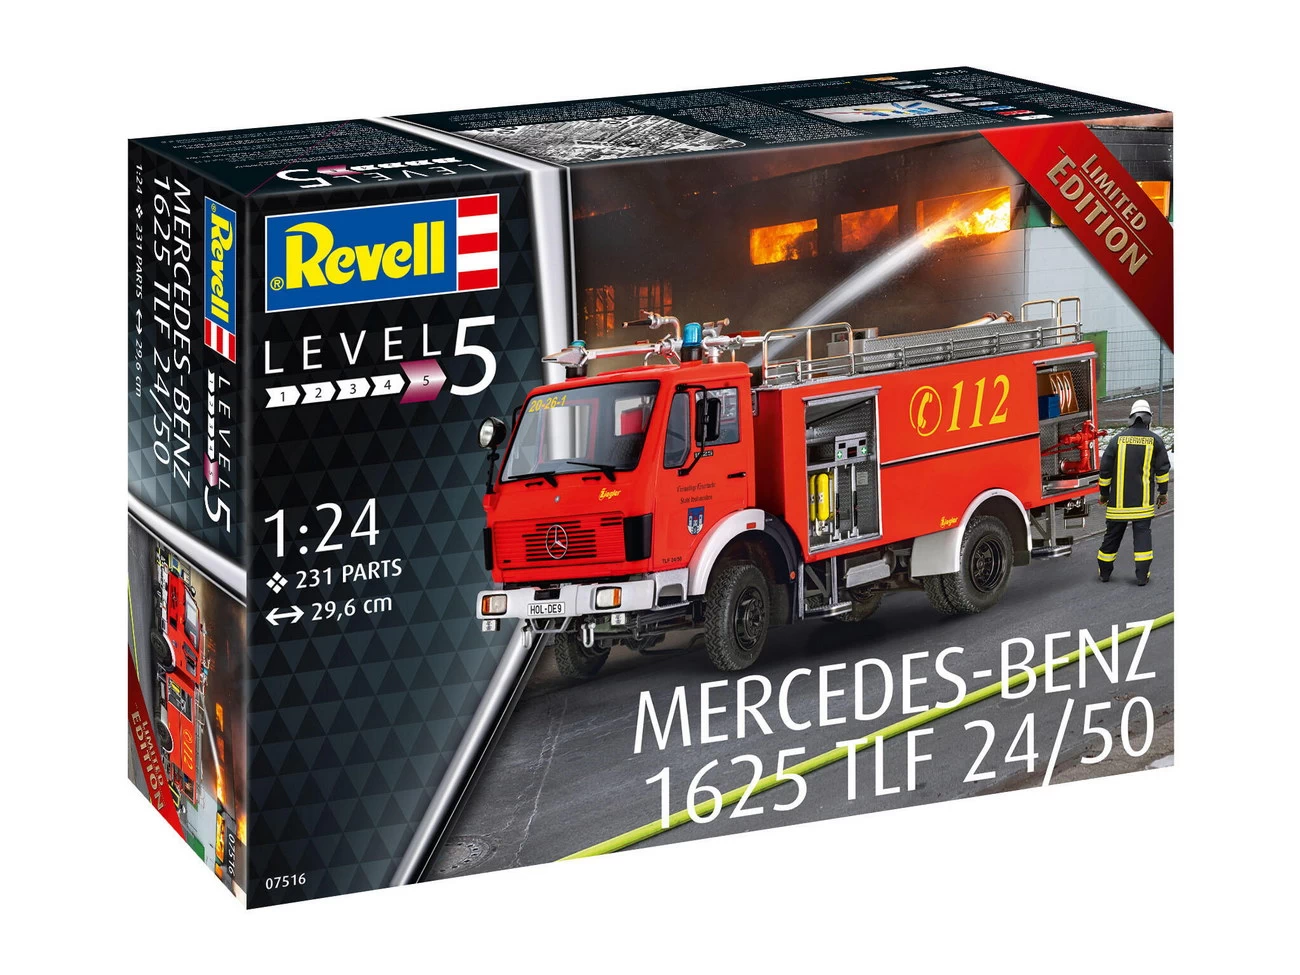 Revell 07516 - Mercedes-Benz 1625 TLF 24/50